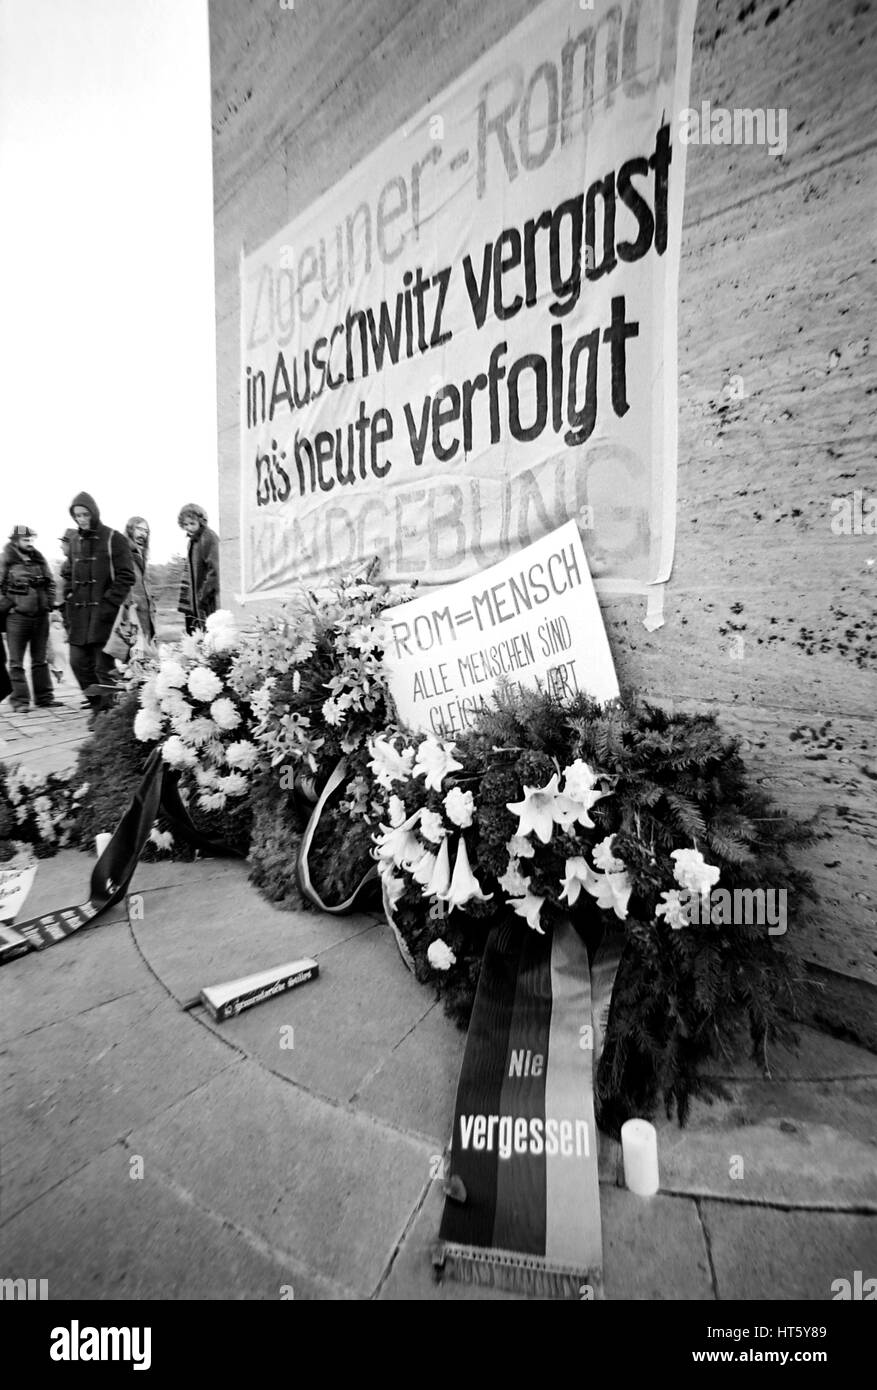 Bergen-Belsen, Deutschland, 27.10.1979 - Gedenkfeier auf der Verfolgung von Sinti und Roma im "Dritten Reich" in der Gedenkstätte des KZ Bergen-Belsen (digitales Bild von einem b/w-Film-negativ) Stockfoto